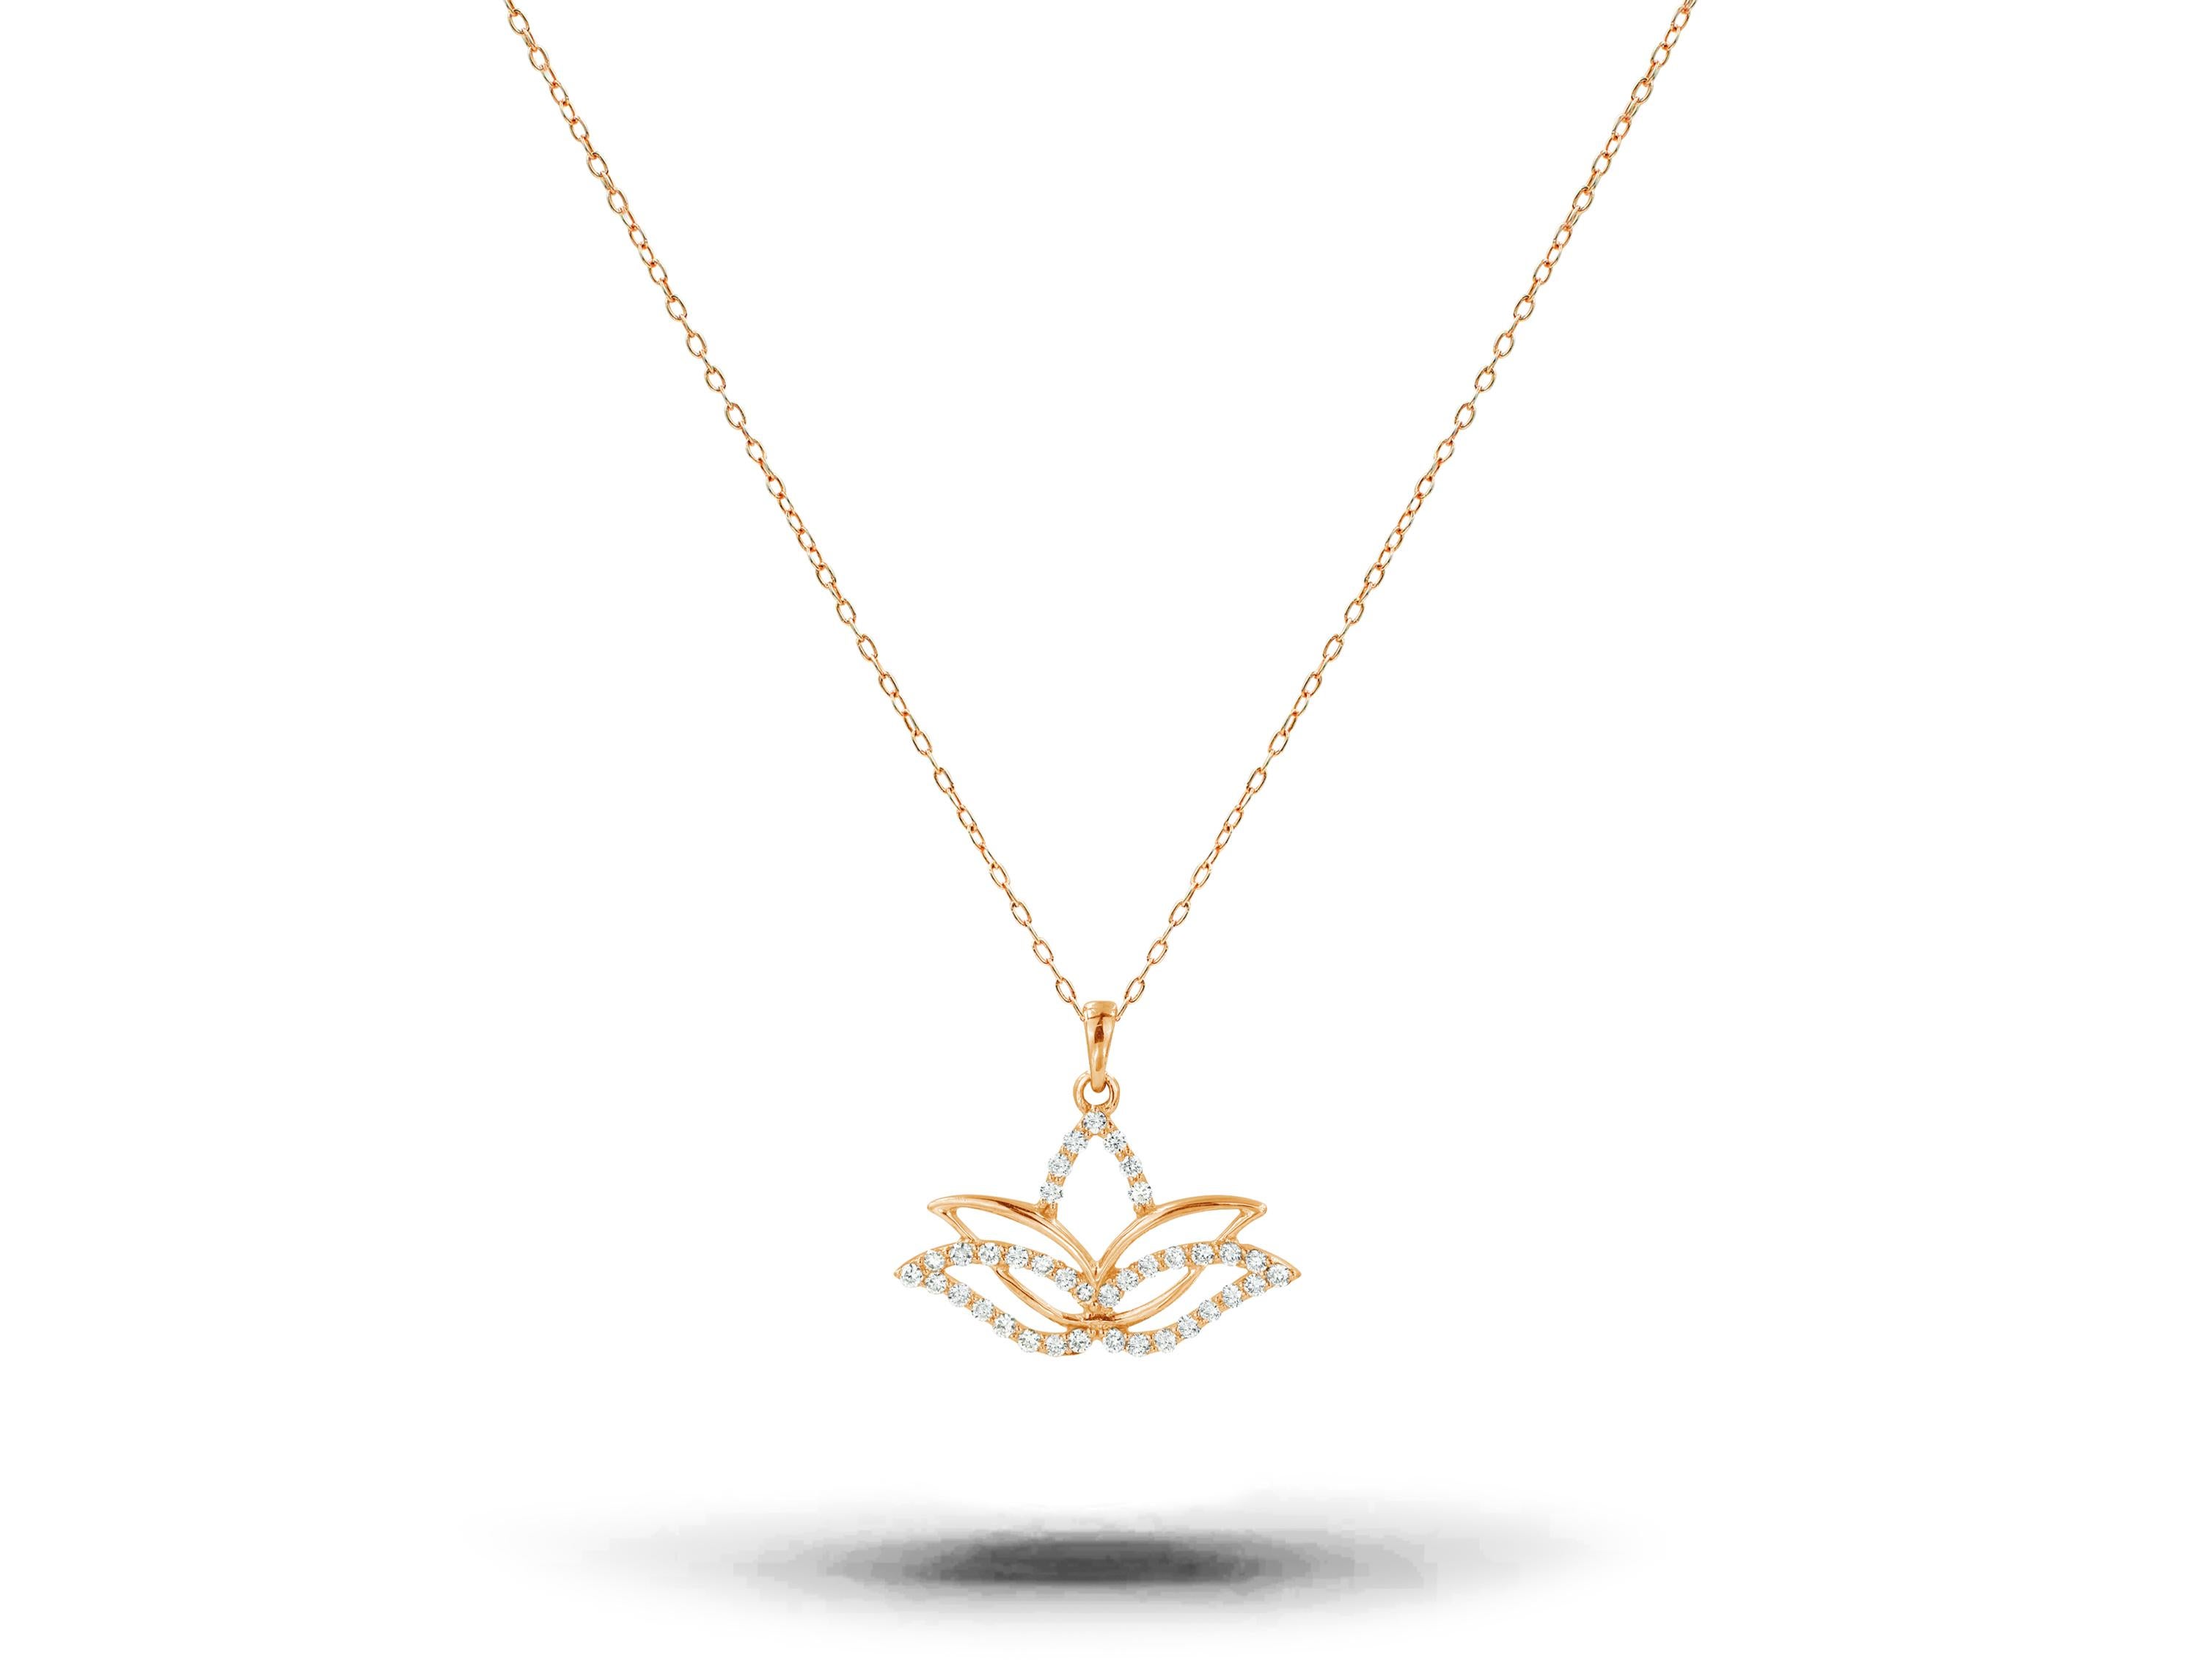 Le collier Fleur de lotus en diamant est fabriqué en or massif 14k disponible en trois couleurs d'or, or blanc / or rose / or jaune.

Léger et magnifique diamant naturel authentique. Chaque diamant est sélectionné à la main par mes soins pour en